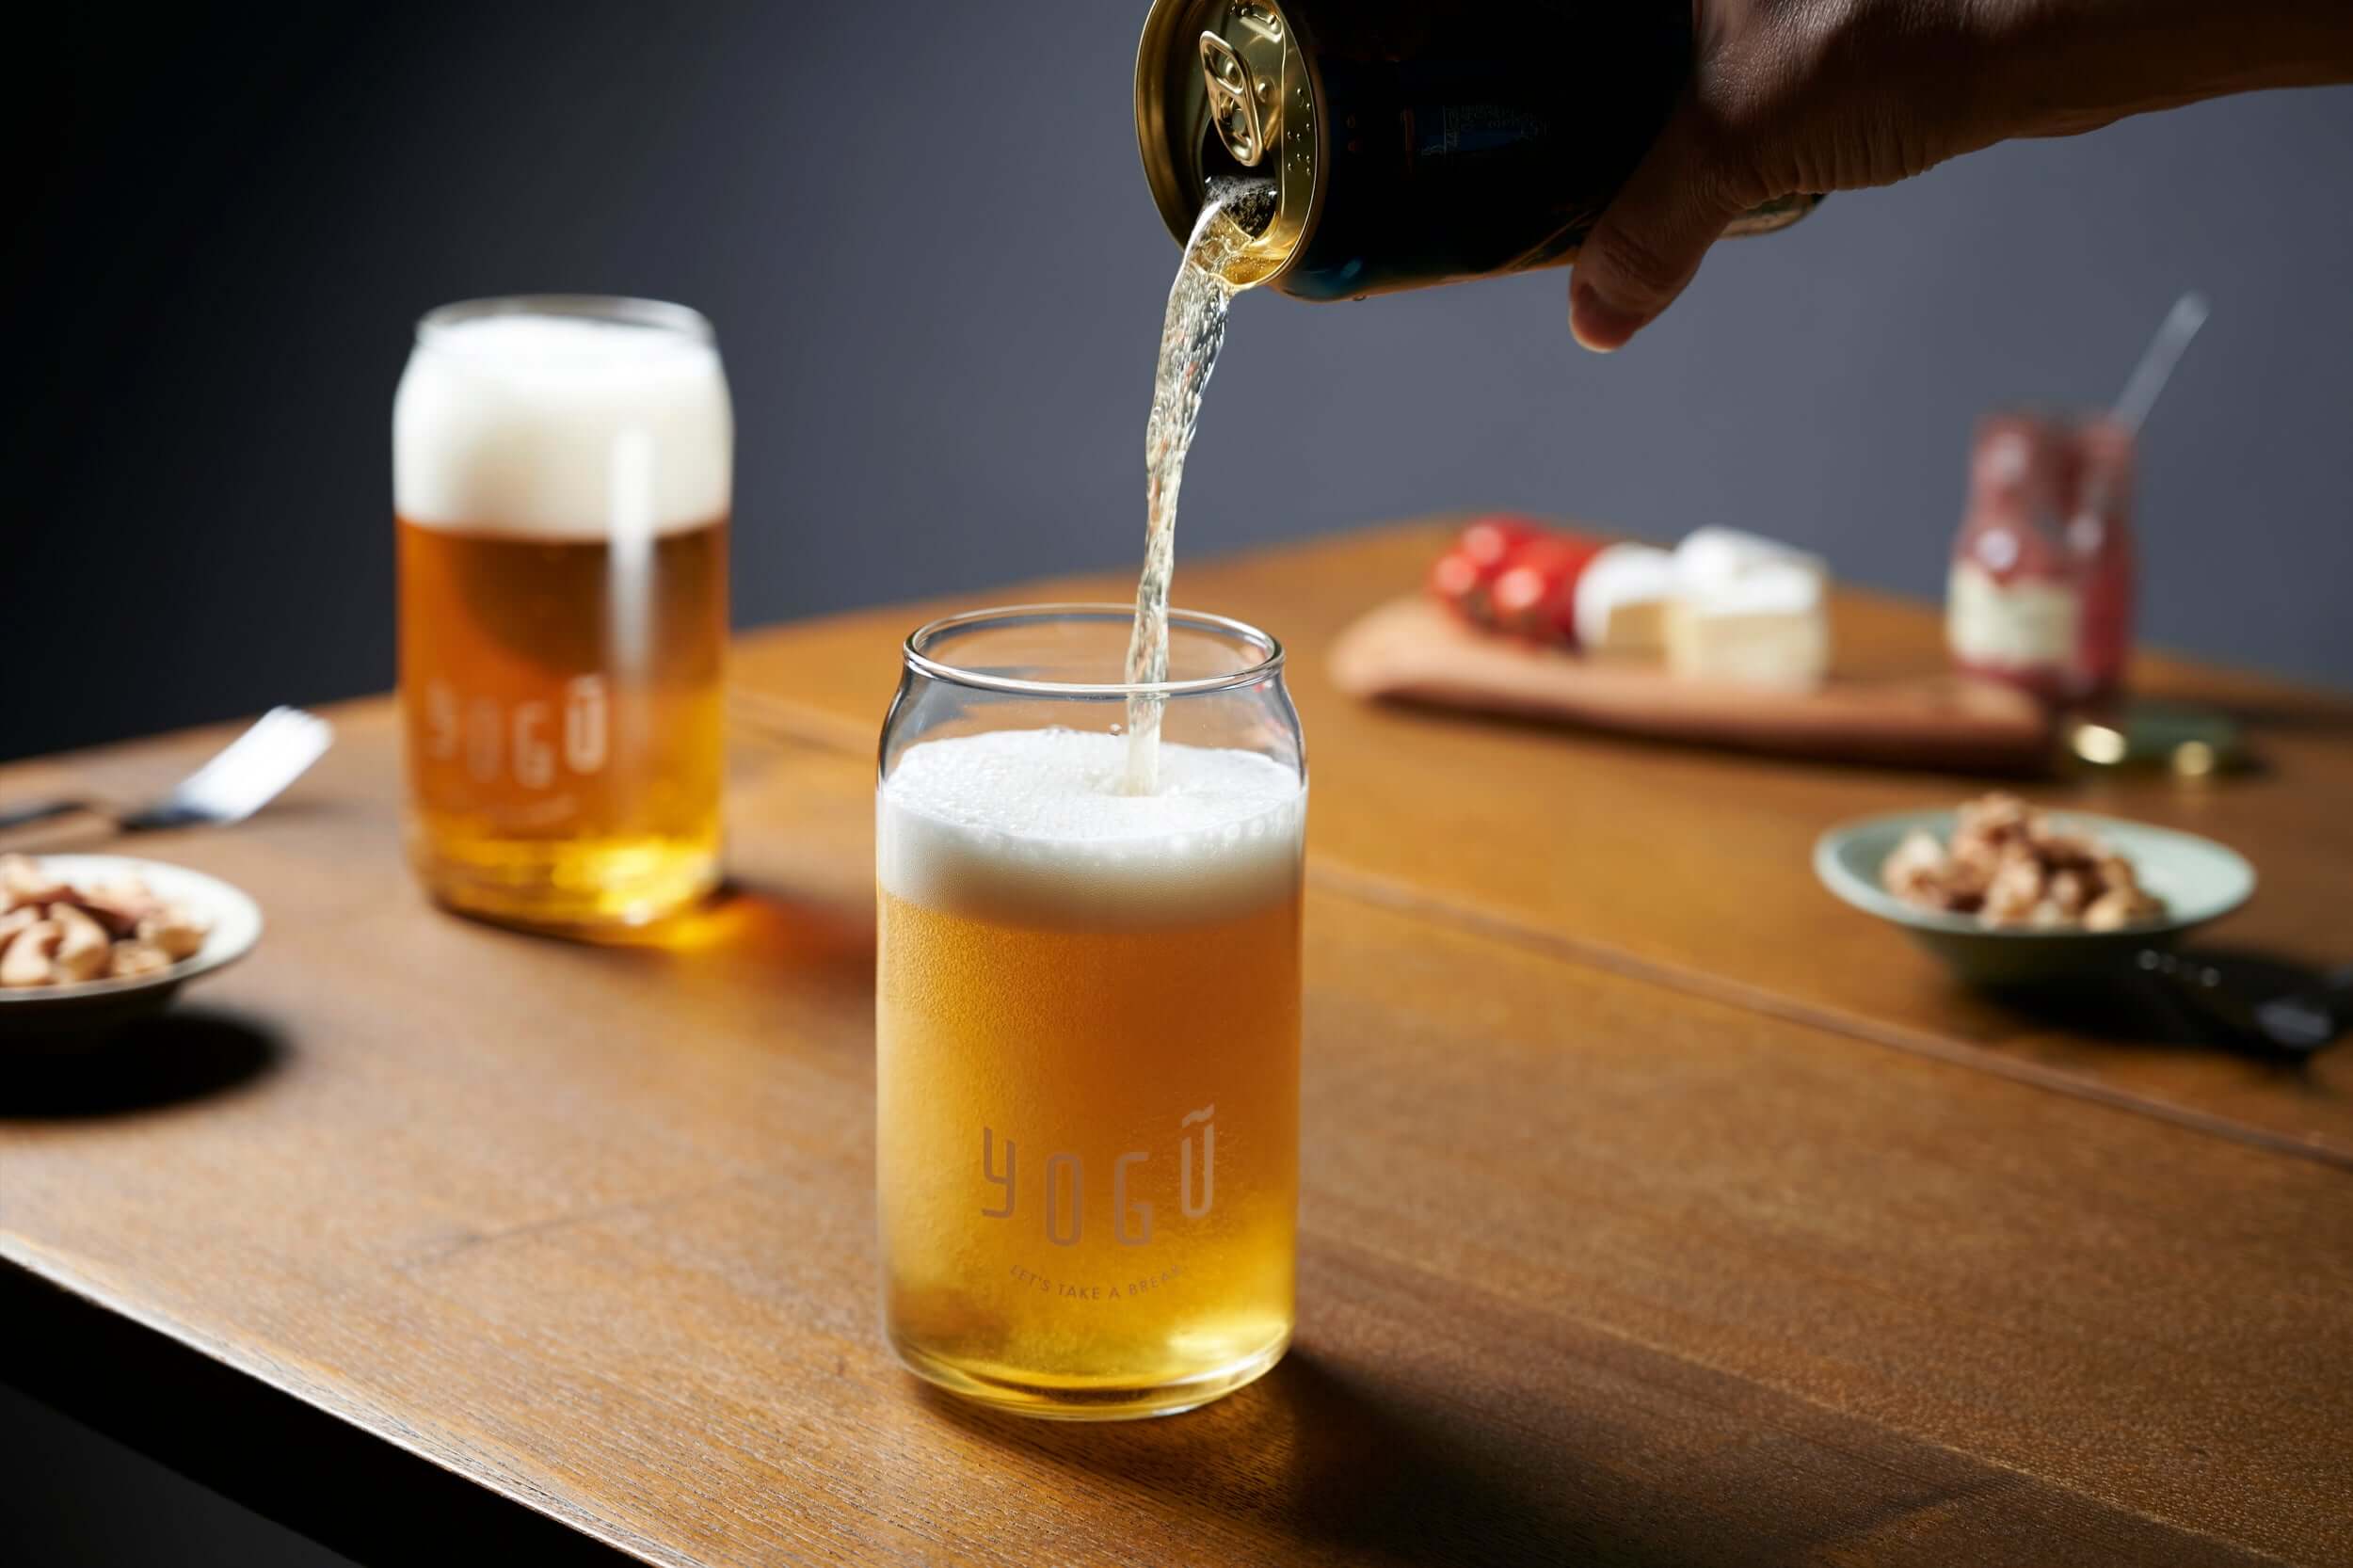 ビール缶型グラス｜3個セット(10%OFF)